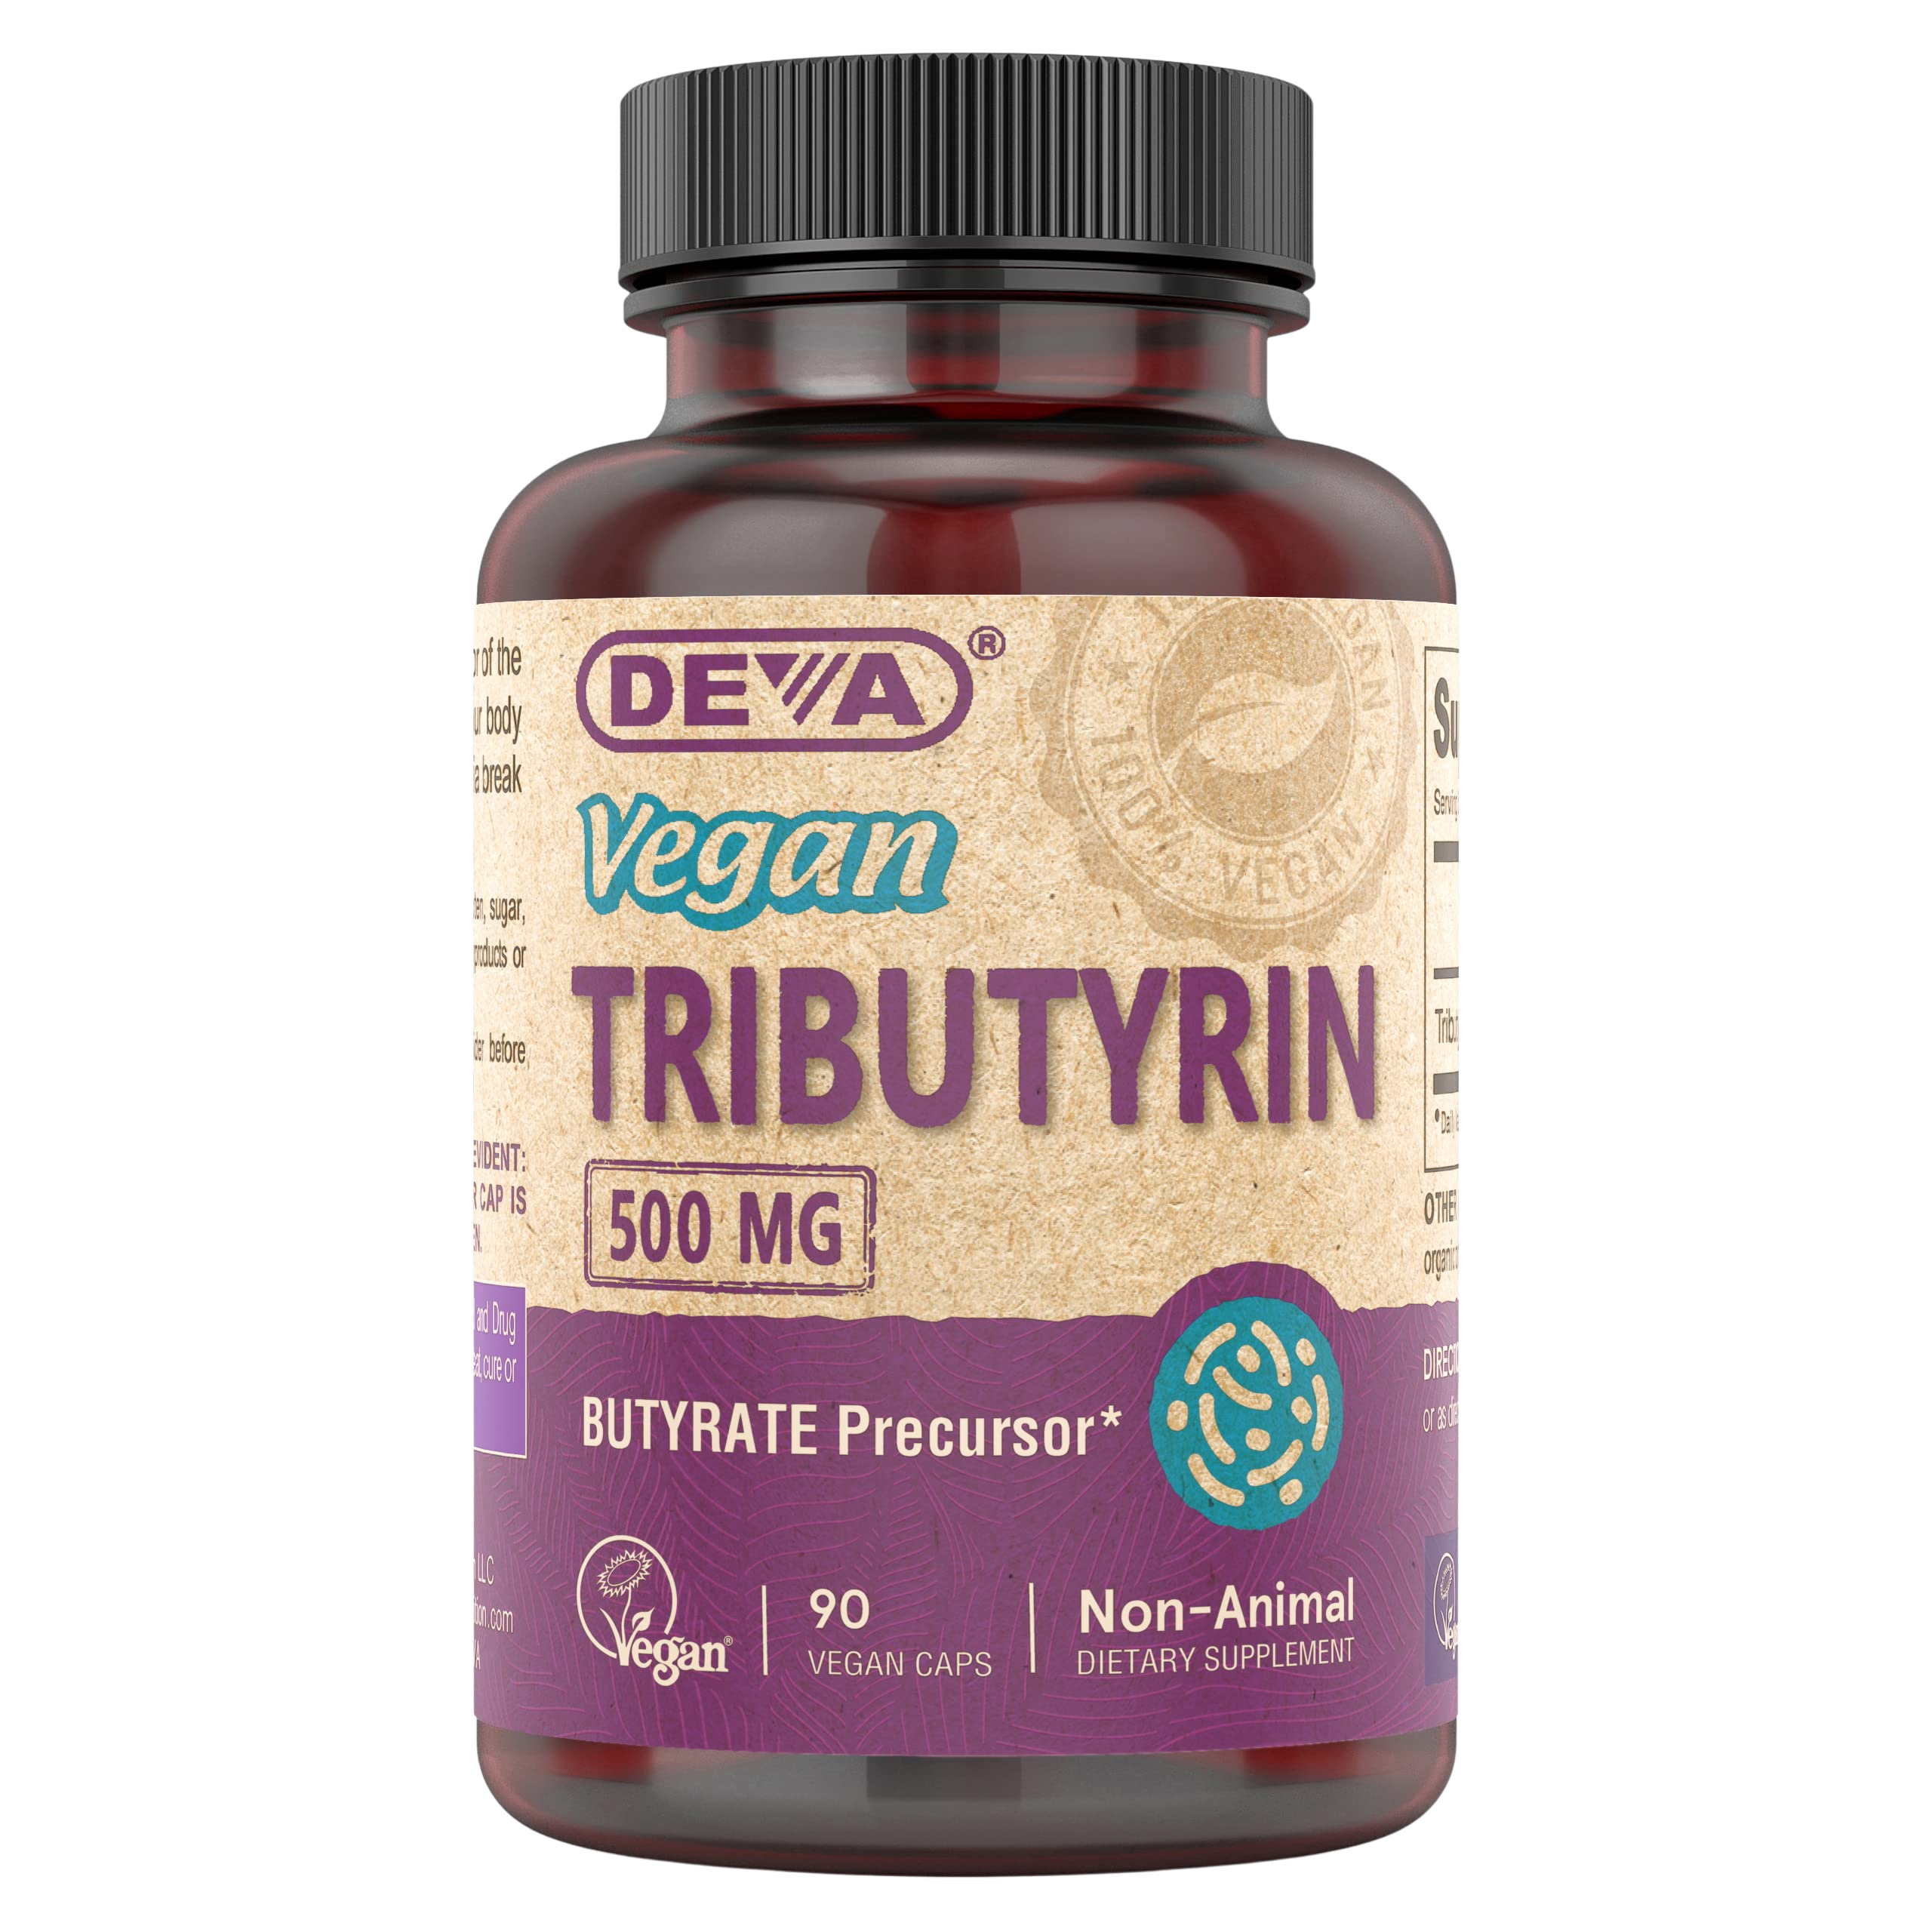 DEVA Vegan Tributyrin Supplement